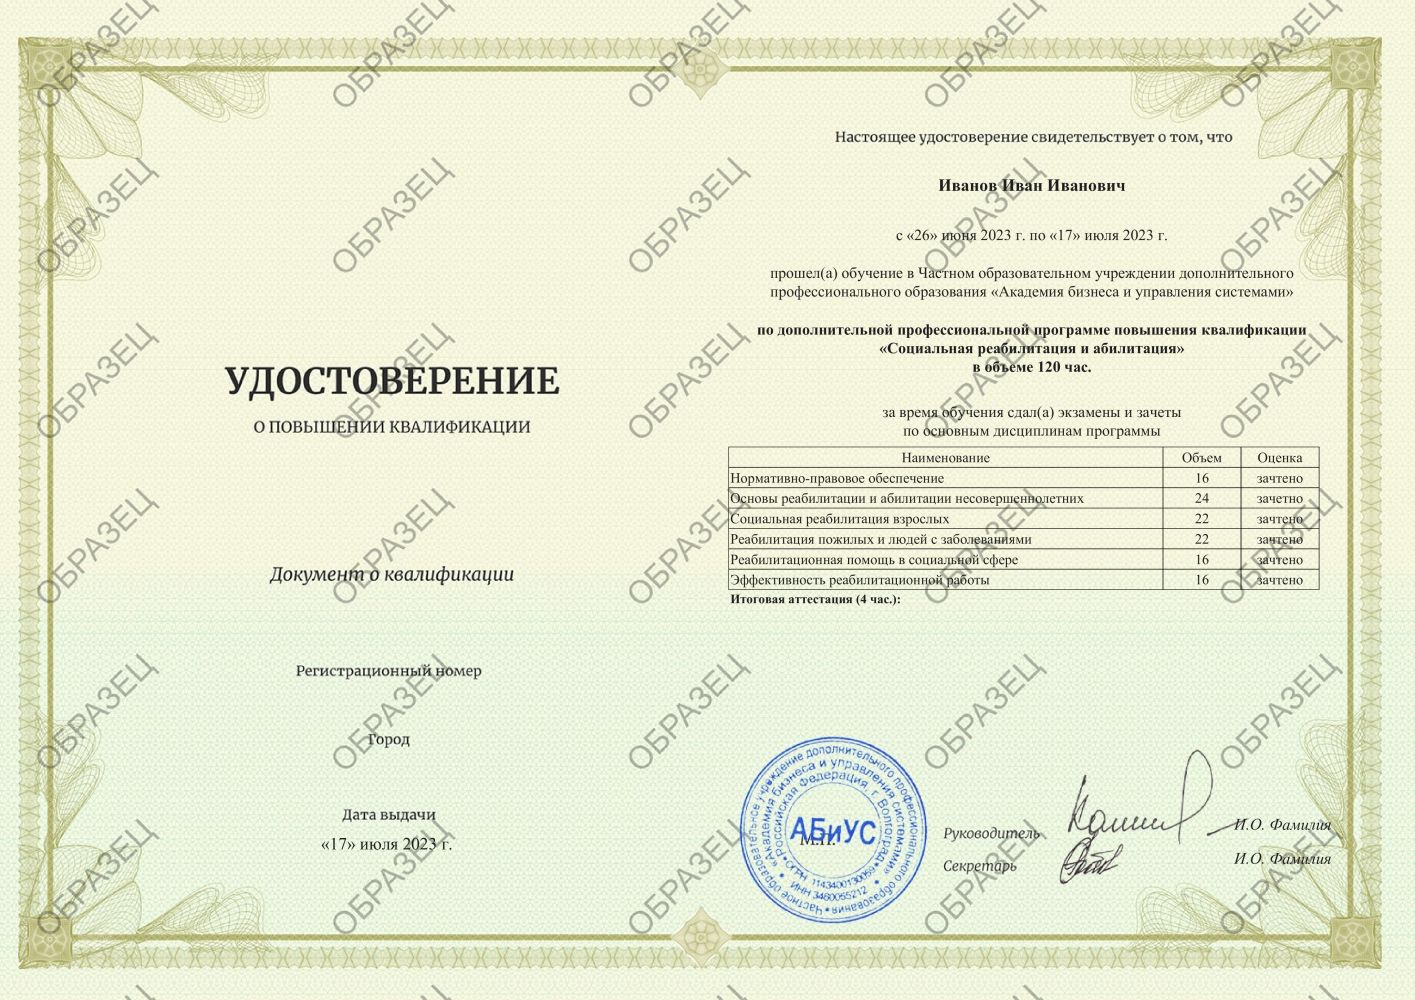 Удостоверение Социальная реабилитация и абилитация 120 часов 5063 руб.